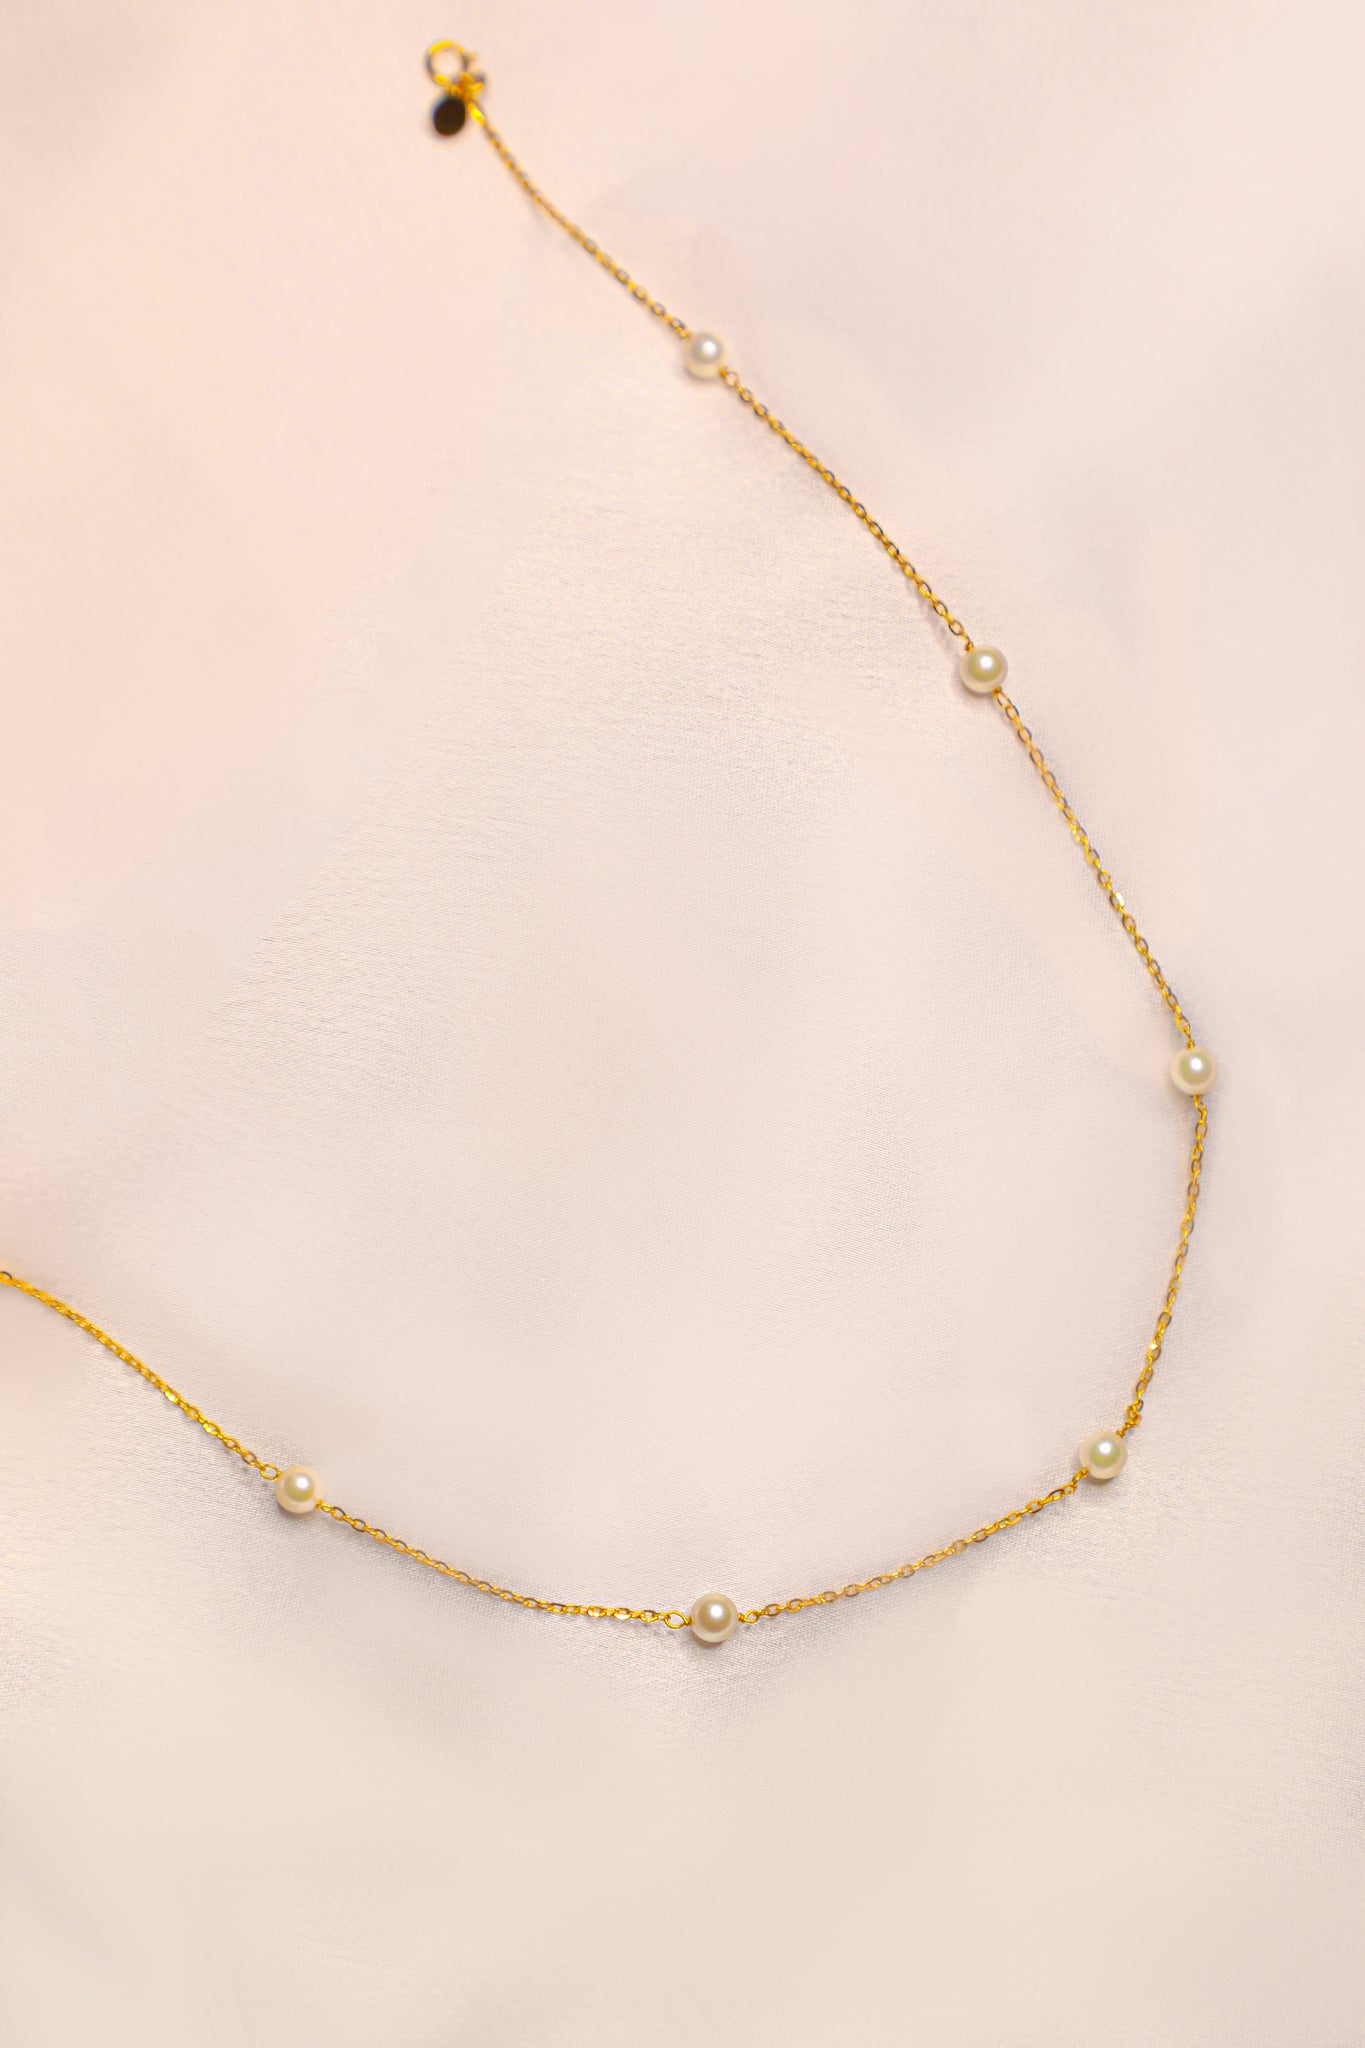 18 karat gold necklace, weight 2.05 grams - زمرد ذهب و الماس